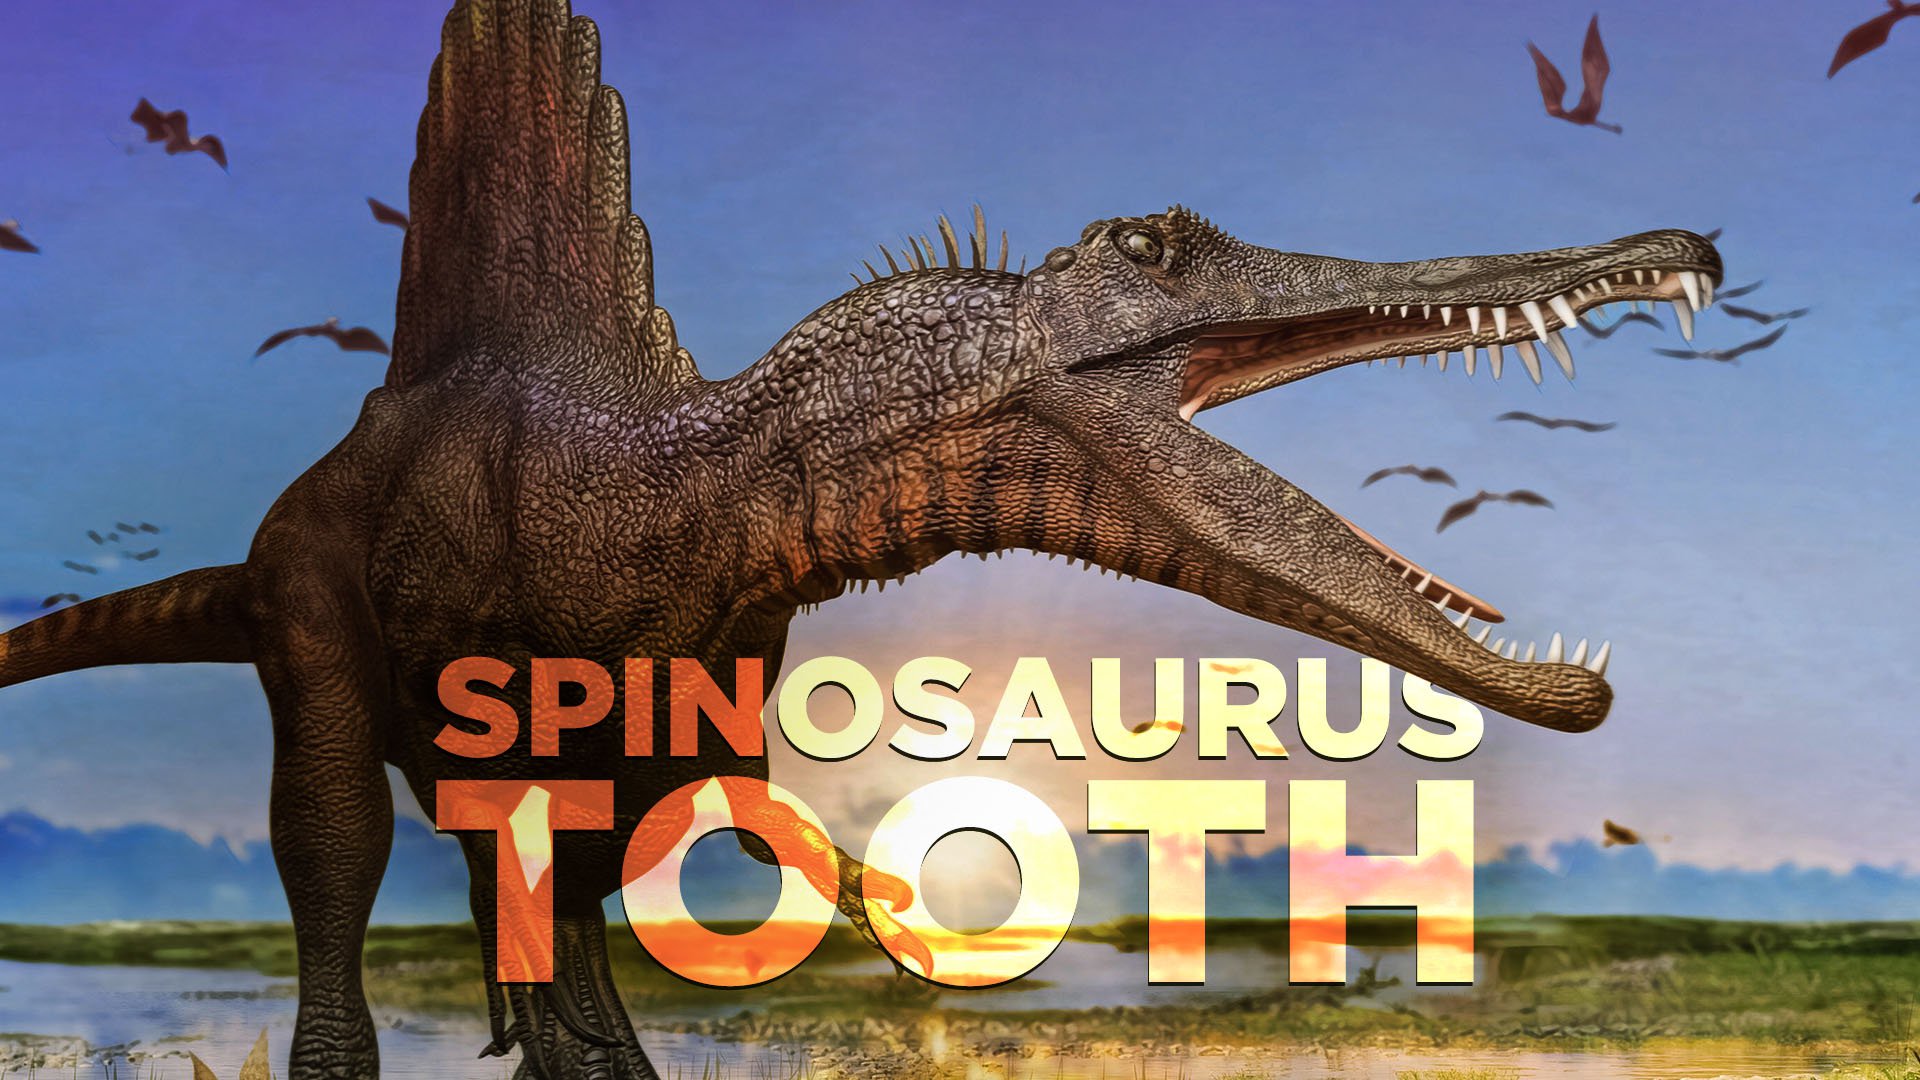 Spinosaurus Tooth!